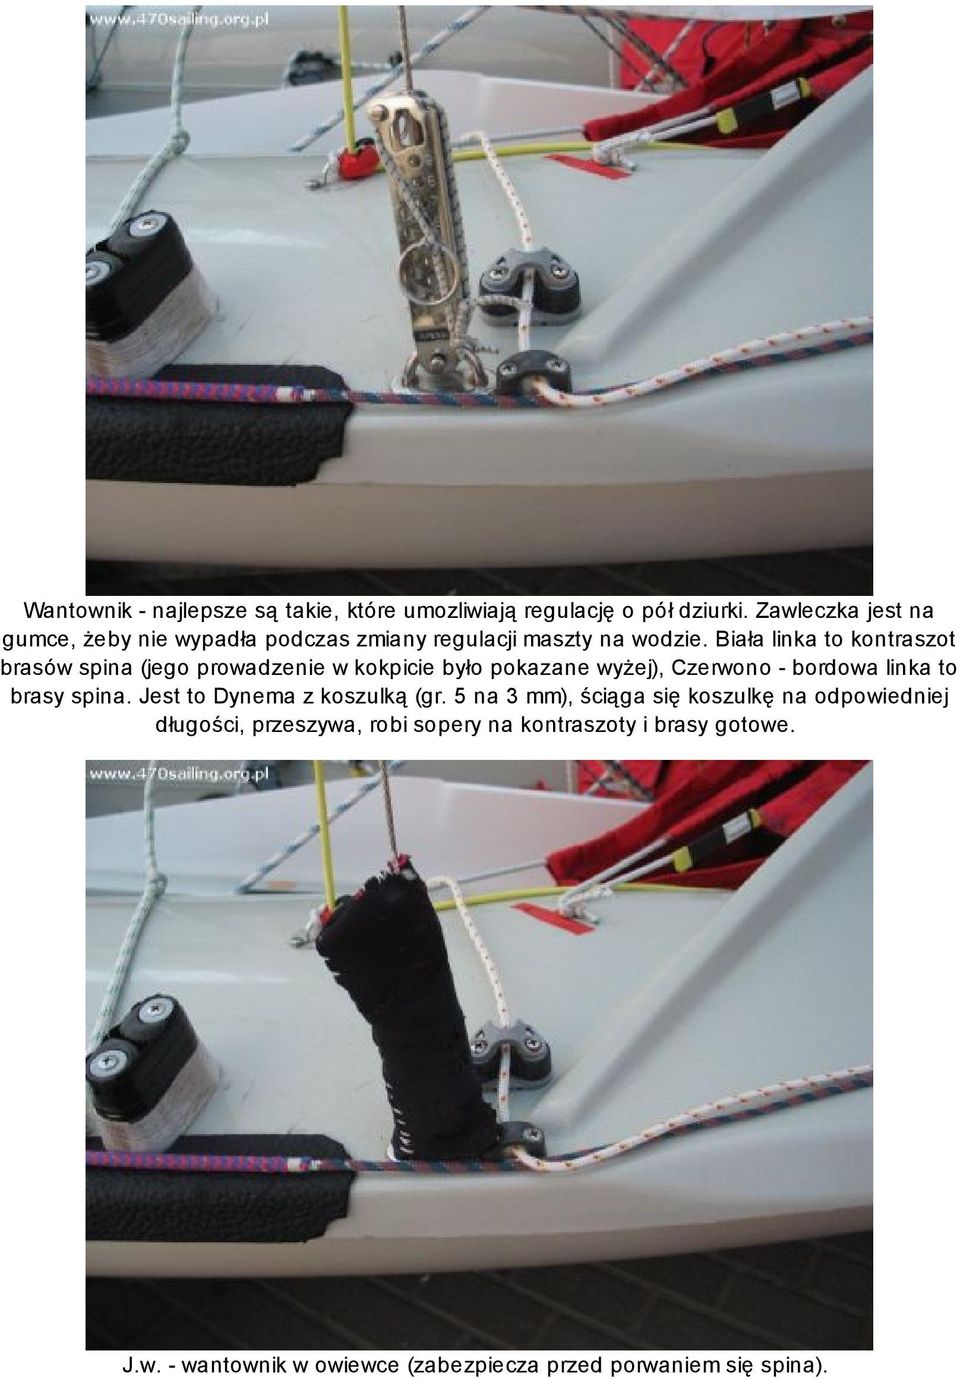 Biała linka to kontraszot brasów spina (jego prowadzenie w kokpicie było pokazane wyżej), Czerwono - bordowa linka to brasy